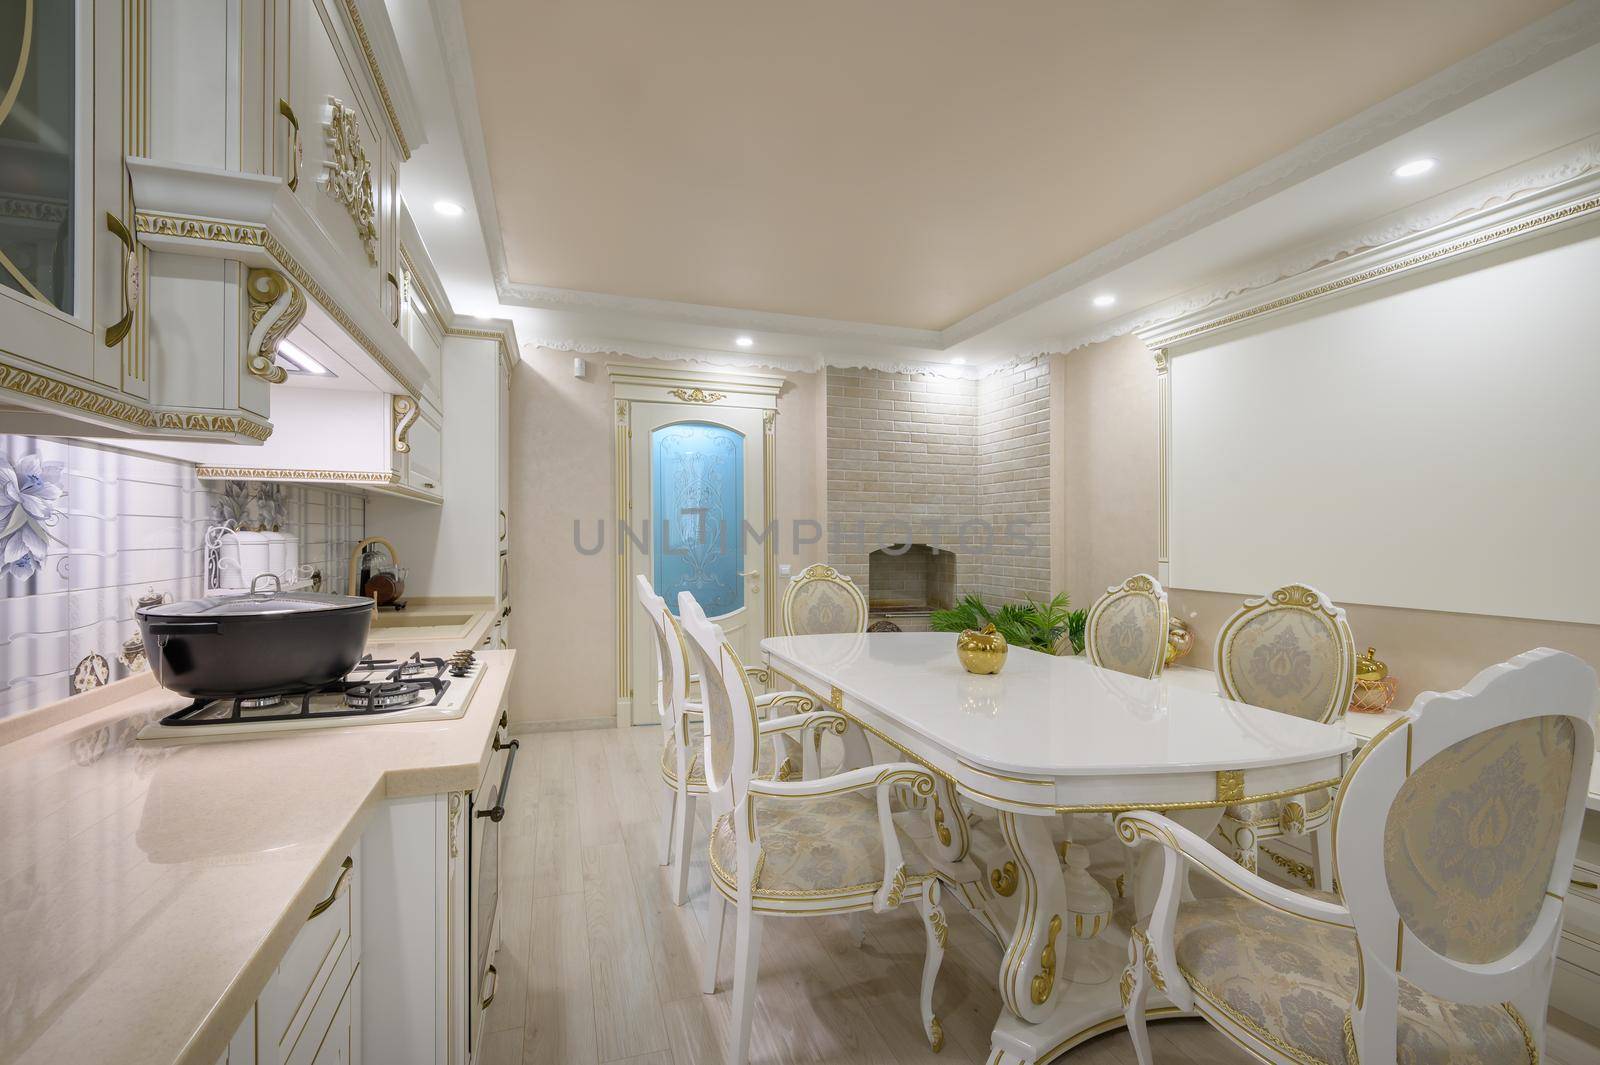 Interior renovation showcase of rich classic white kitchen